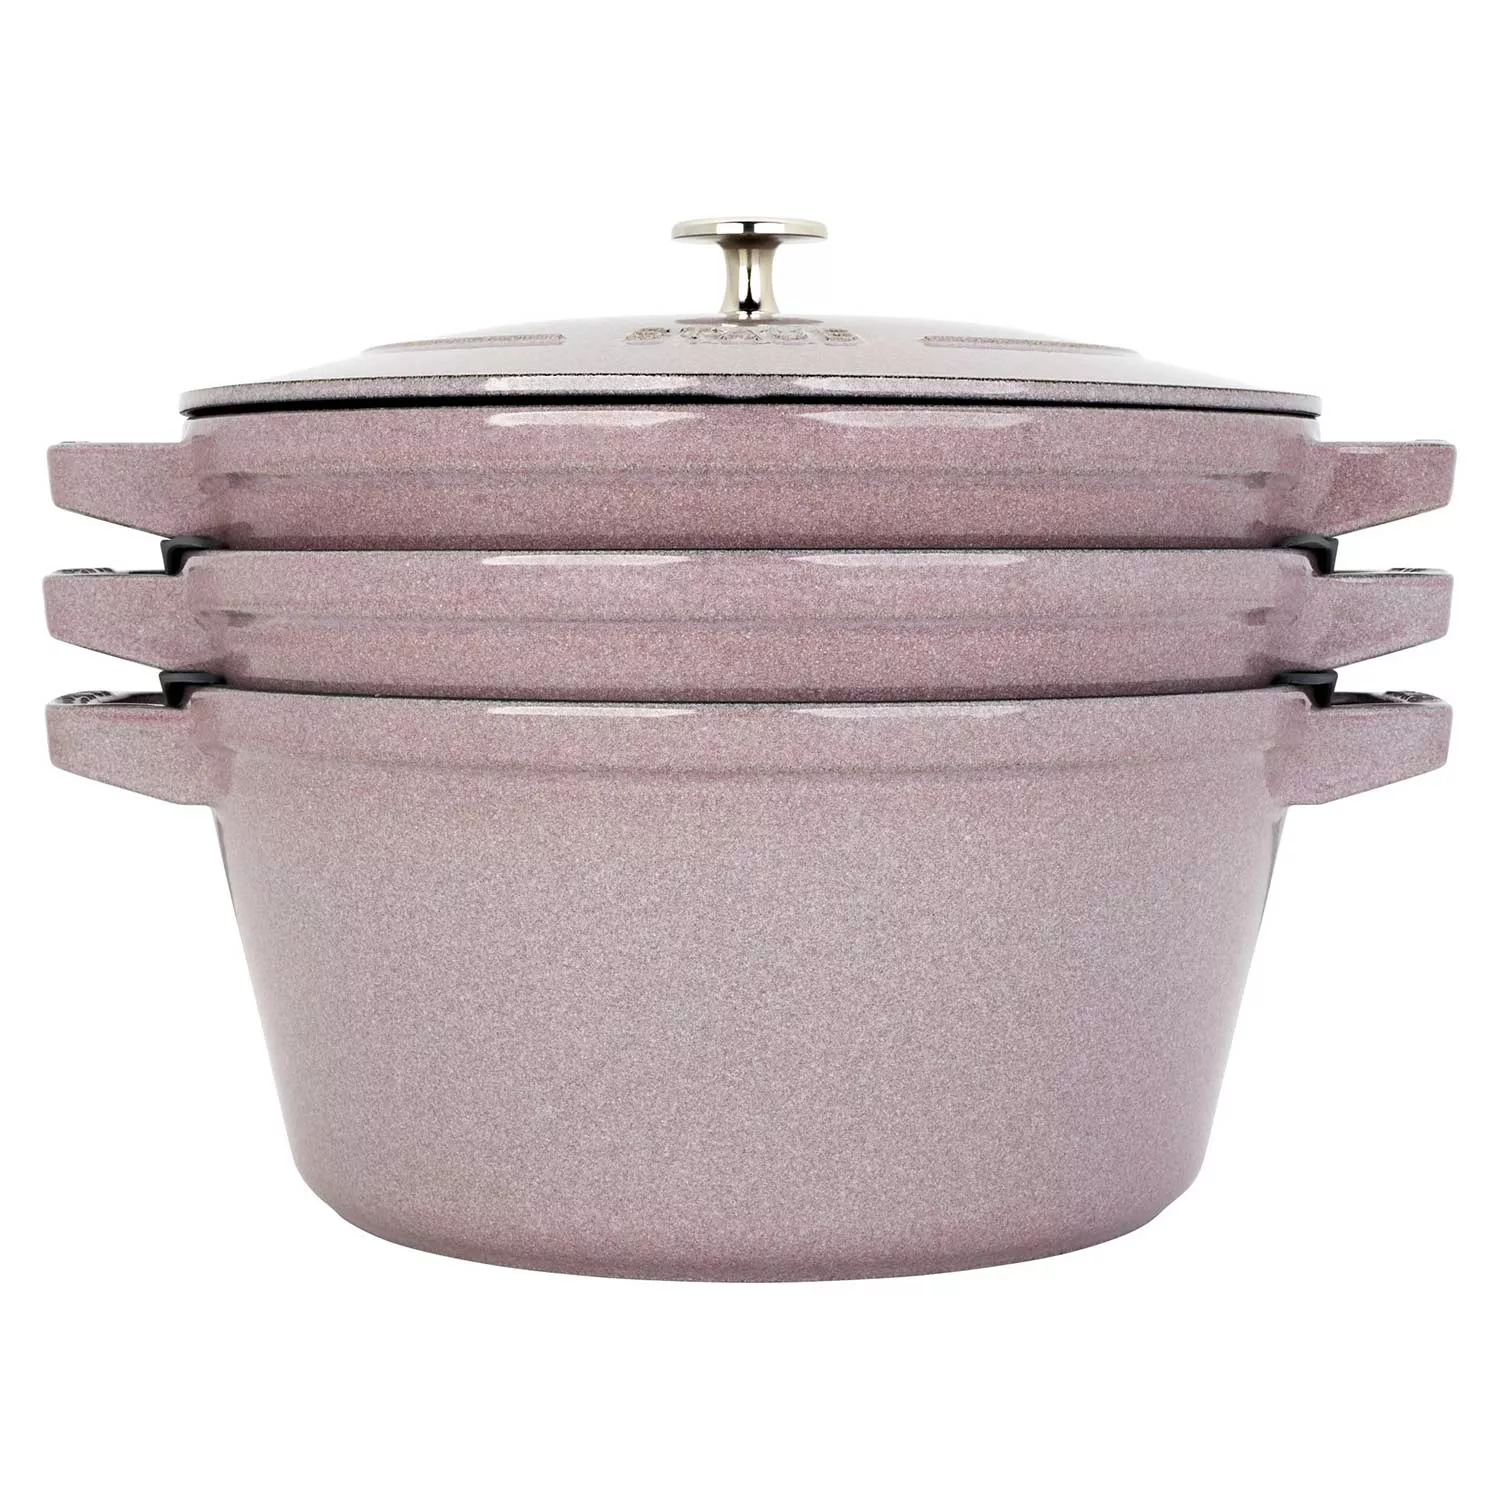 Staub Cookware, Staub Pots & Pans, Sur La Table